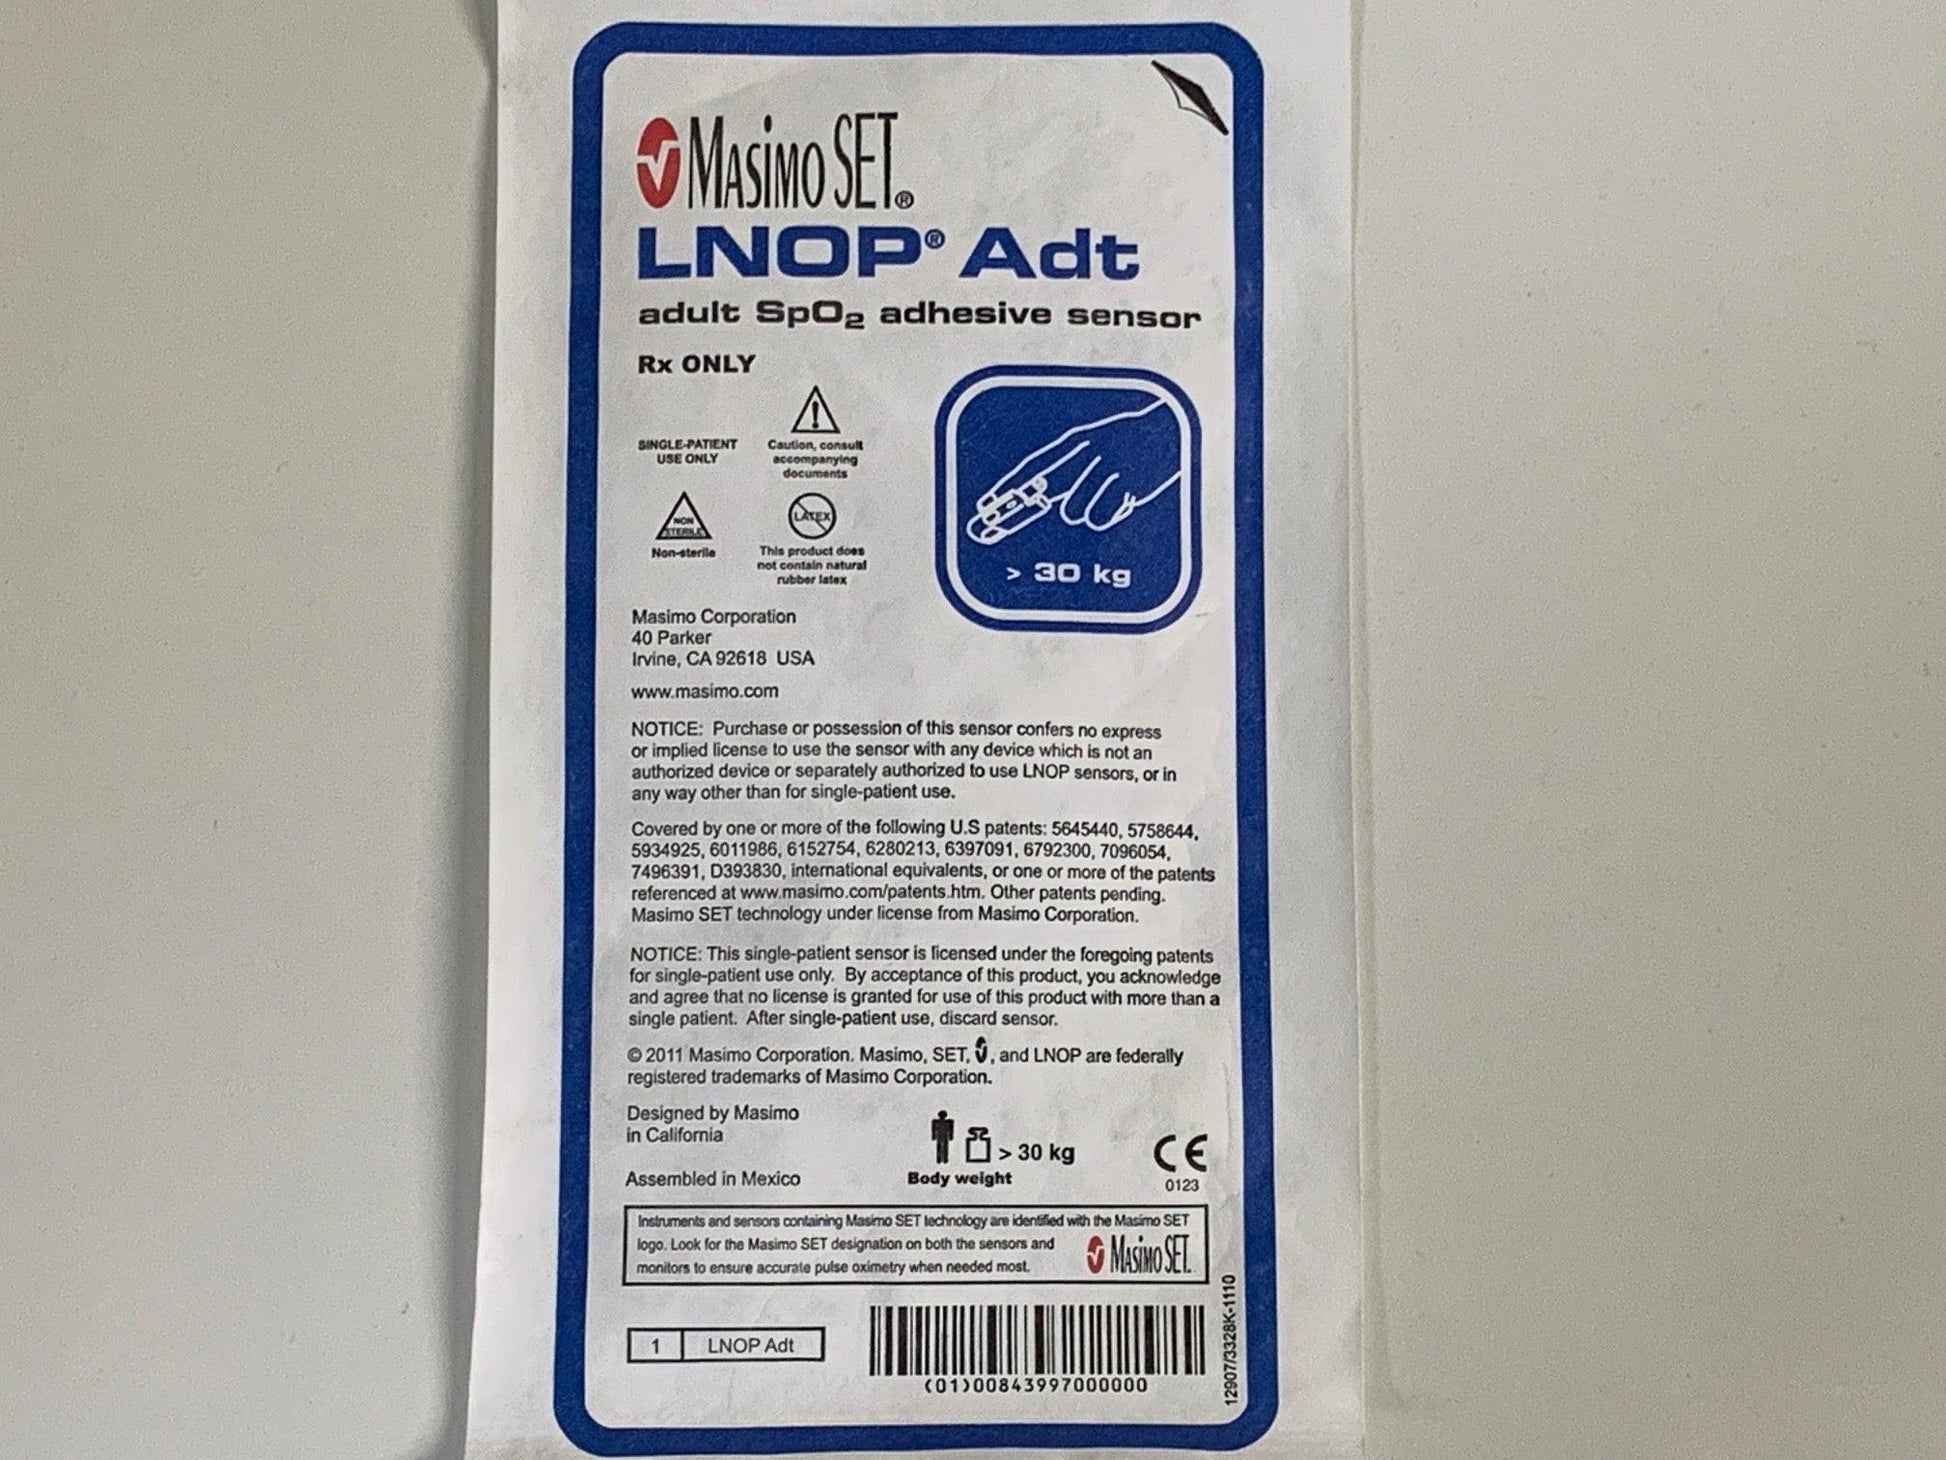 Lot of 2 New Adult SpO2 Adhesive Sensor LNOP Adt - MBR Medicals